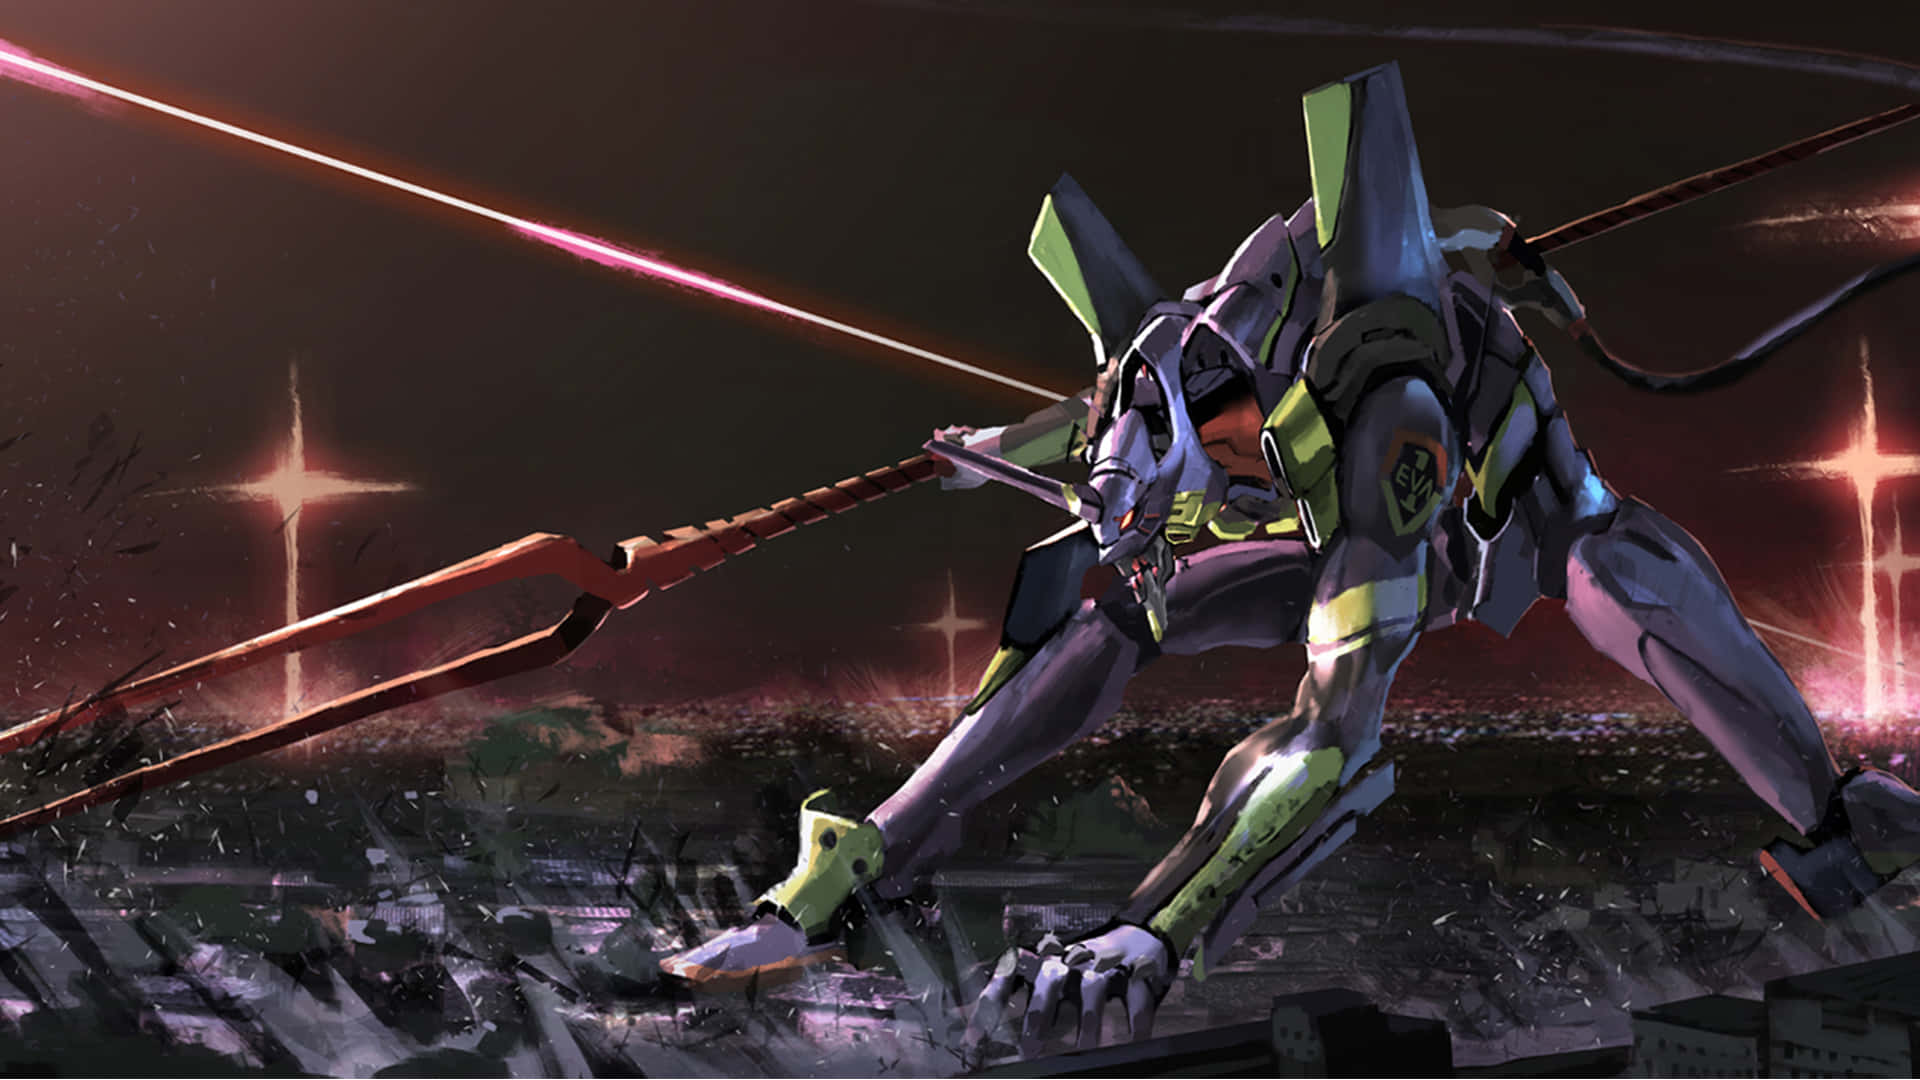 Shinjiikari Kæmper Sammen Med Eva-01 For At Beskytte Tokyo-3 Mod Invaderende Angels.